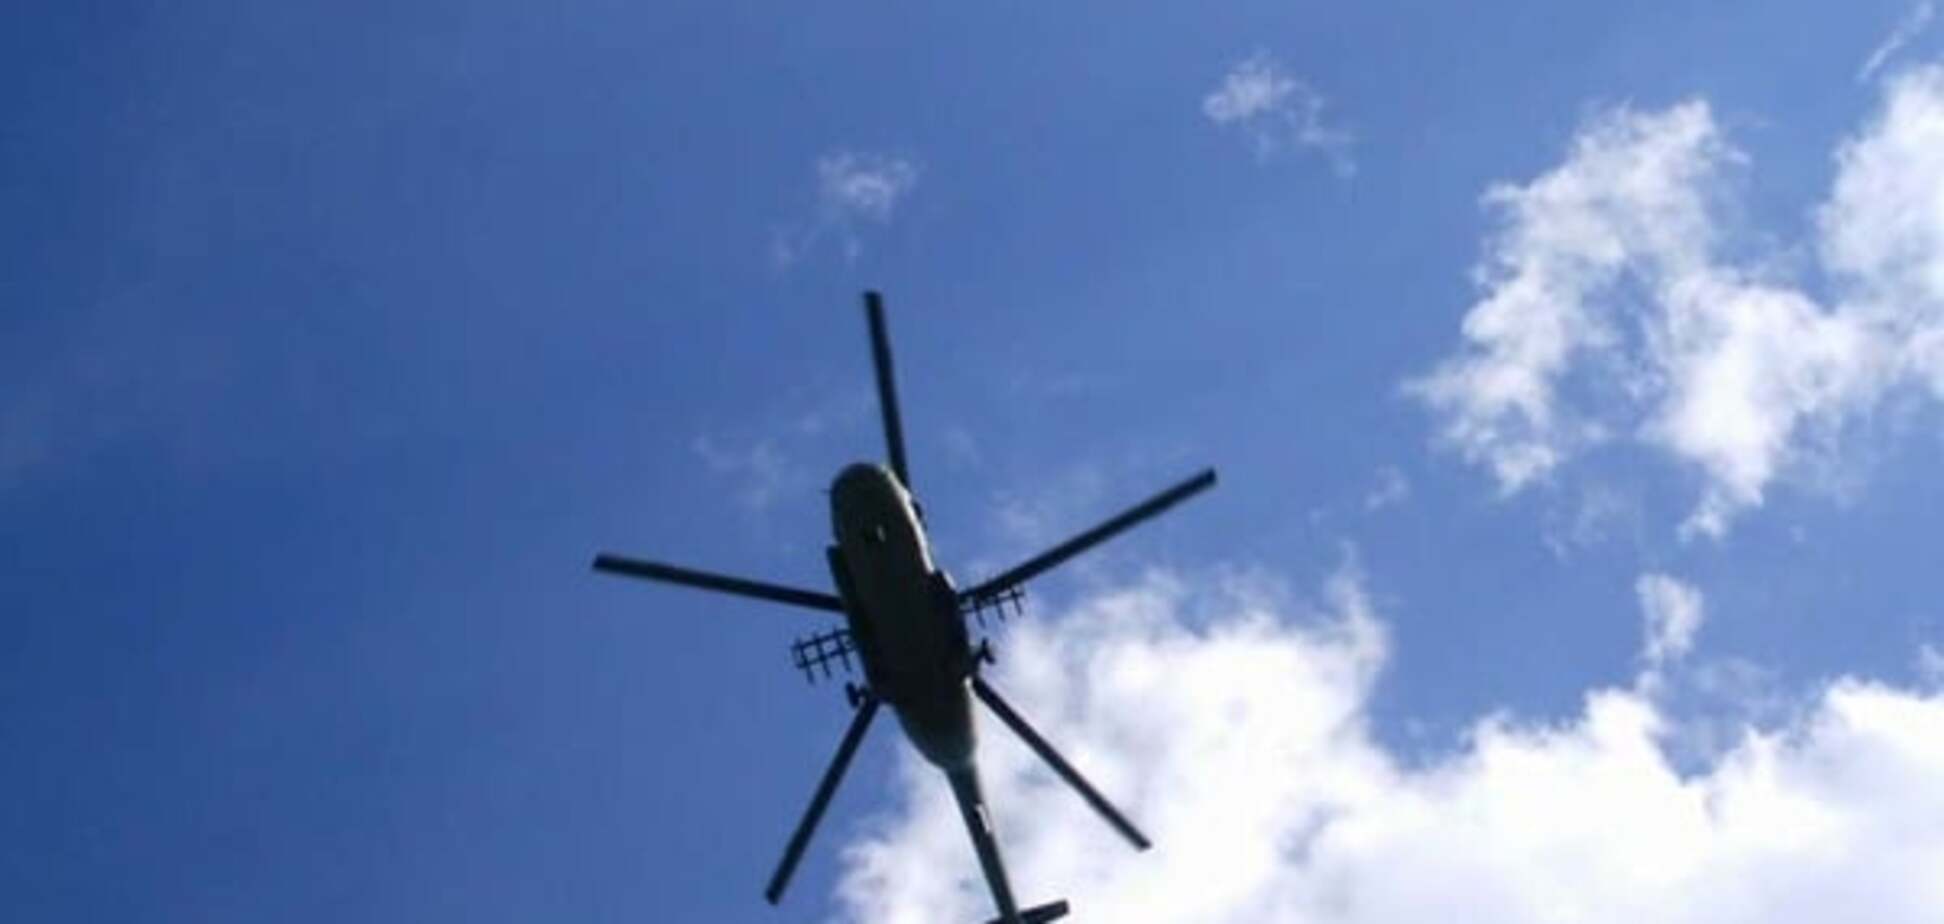 По-братськи: військовий вертоліт РФ порушив повітряний простір Грузії